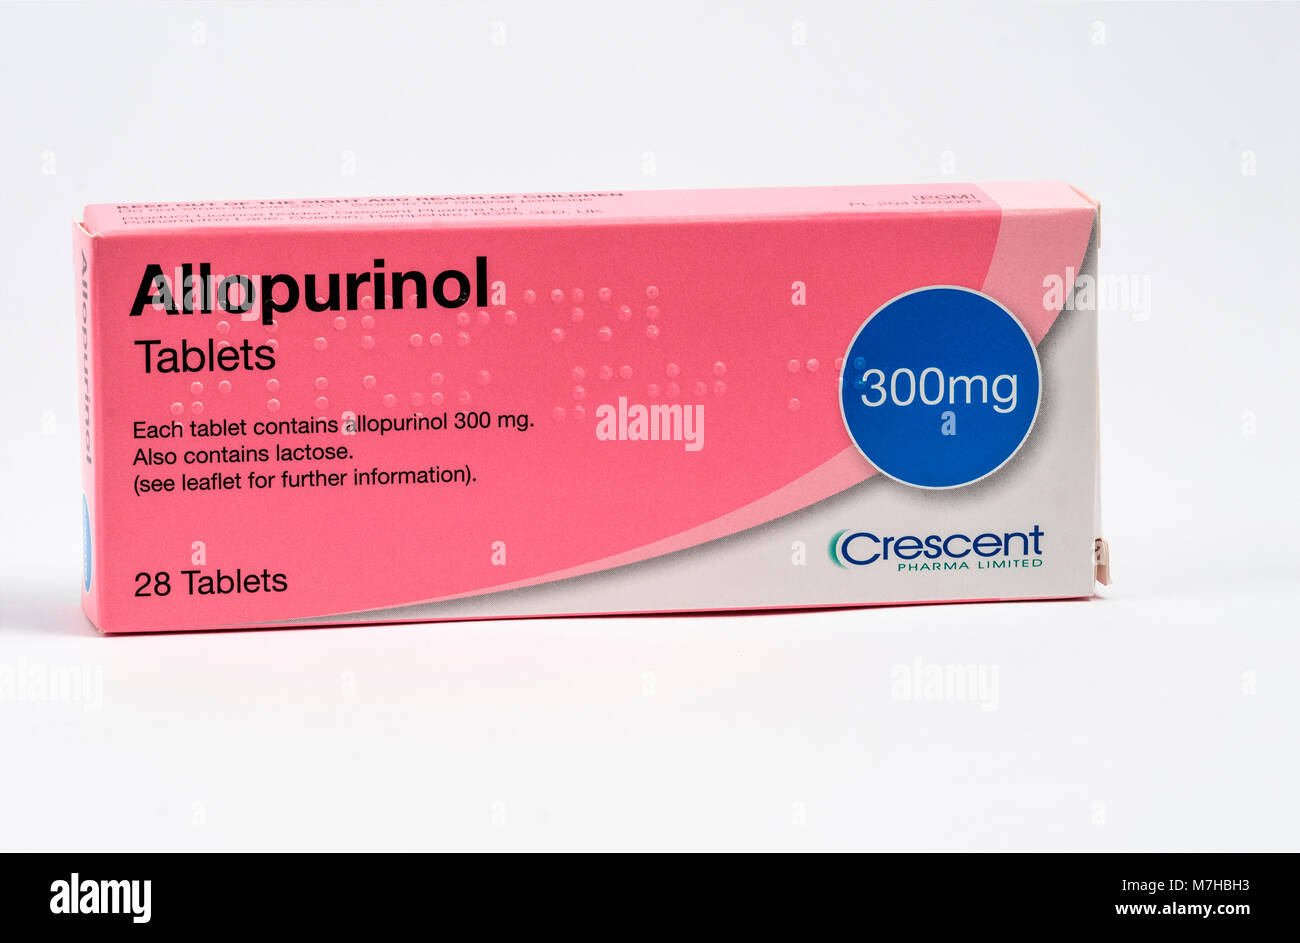 El alopurinol, un medicamento utilizado para disminuir los niveles de ácido úrico elevado en la sangre. Es un inhibidor de la xantina oxidasa. Foto de stock